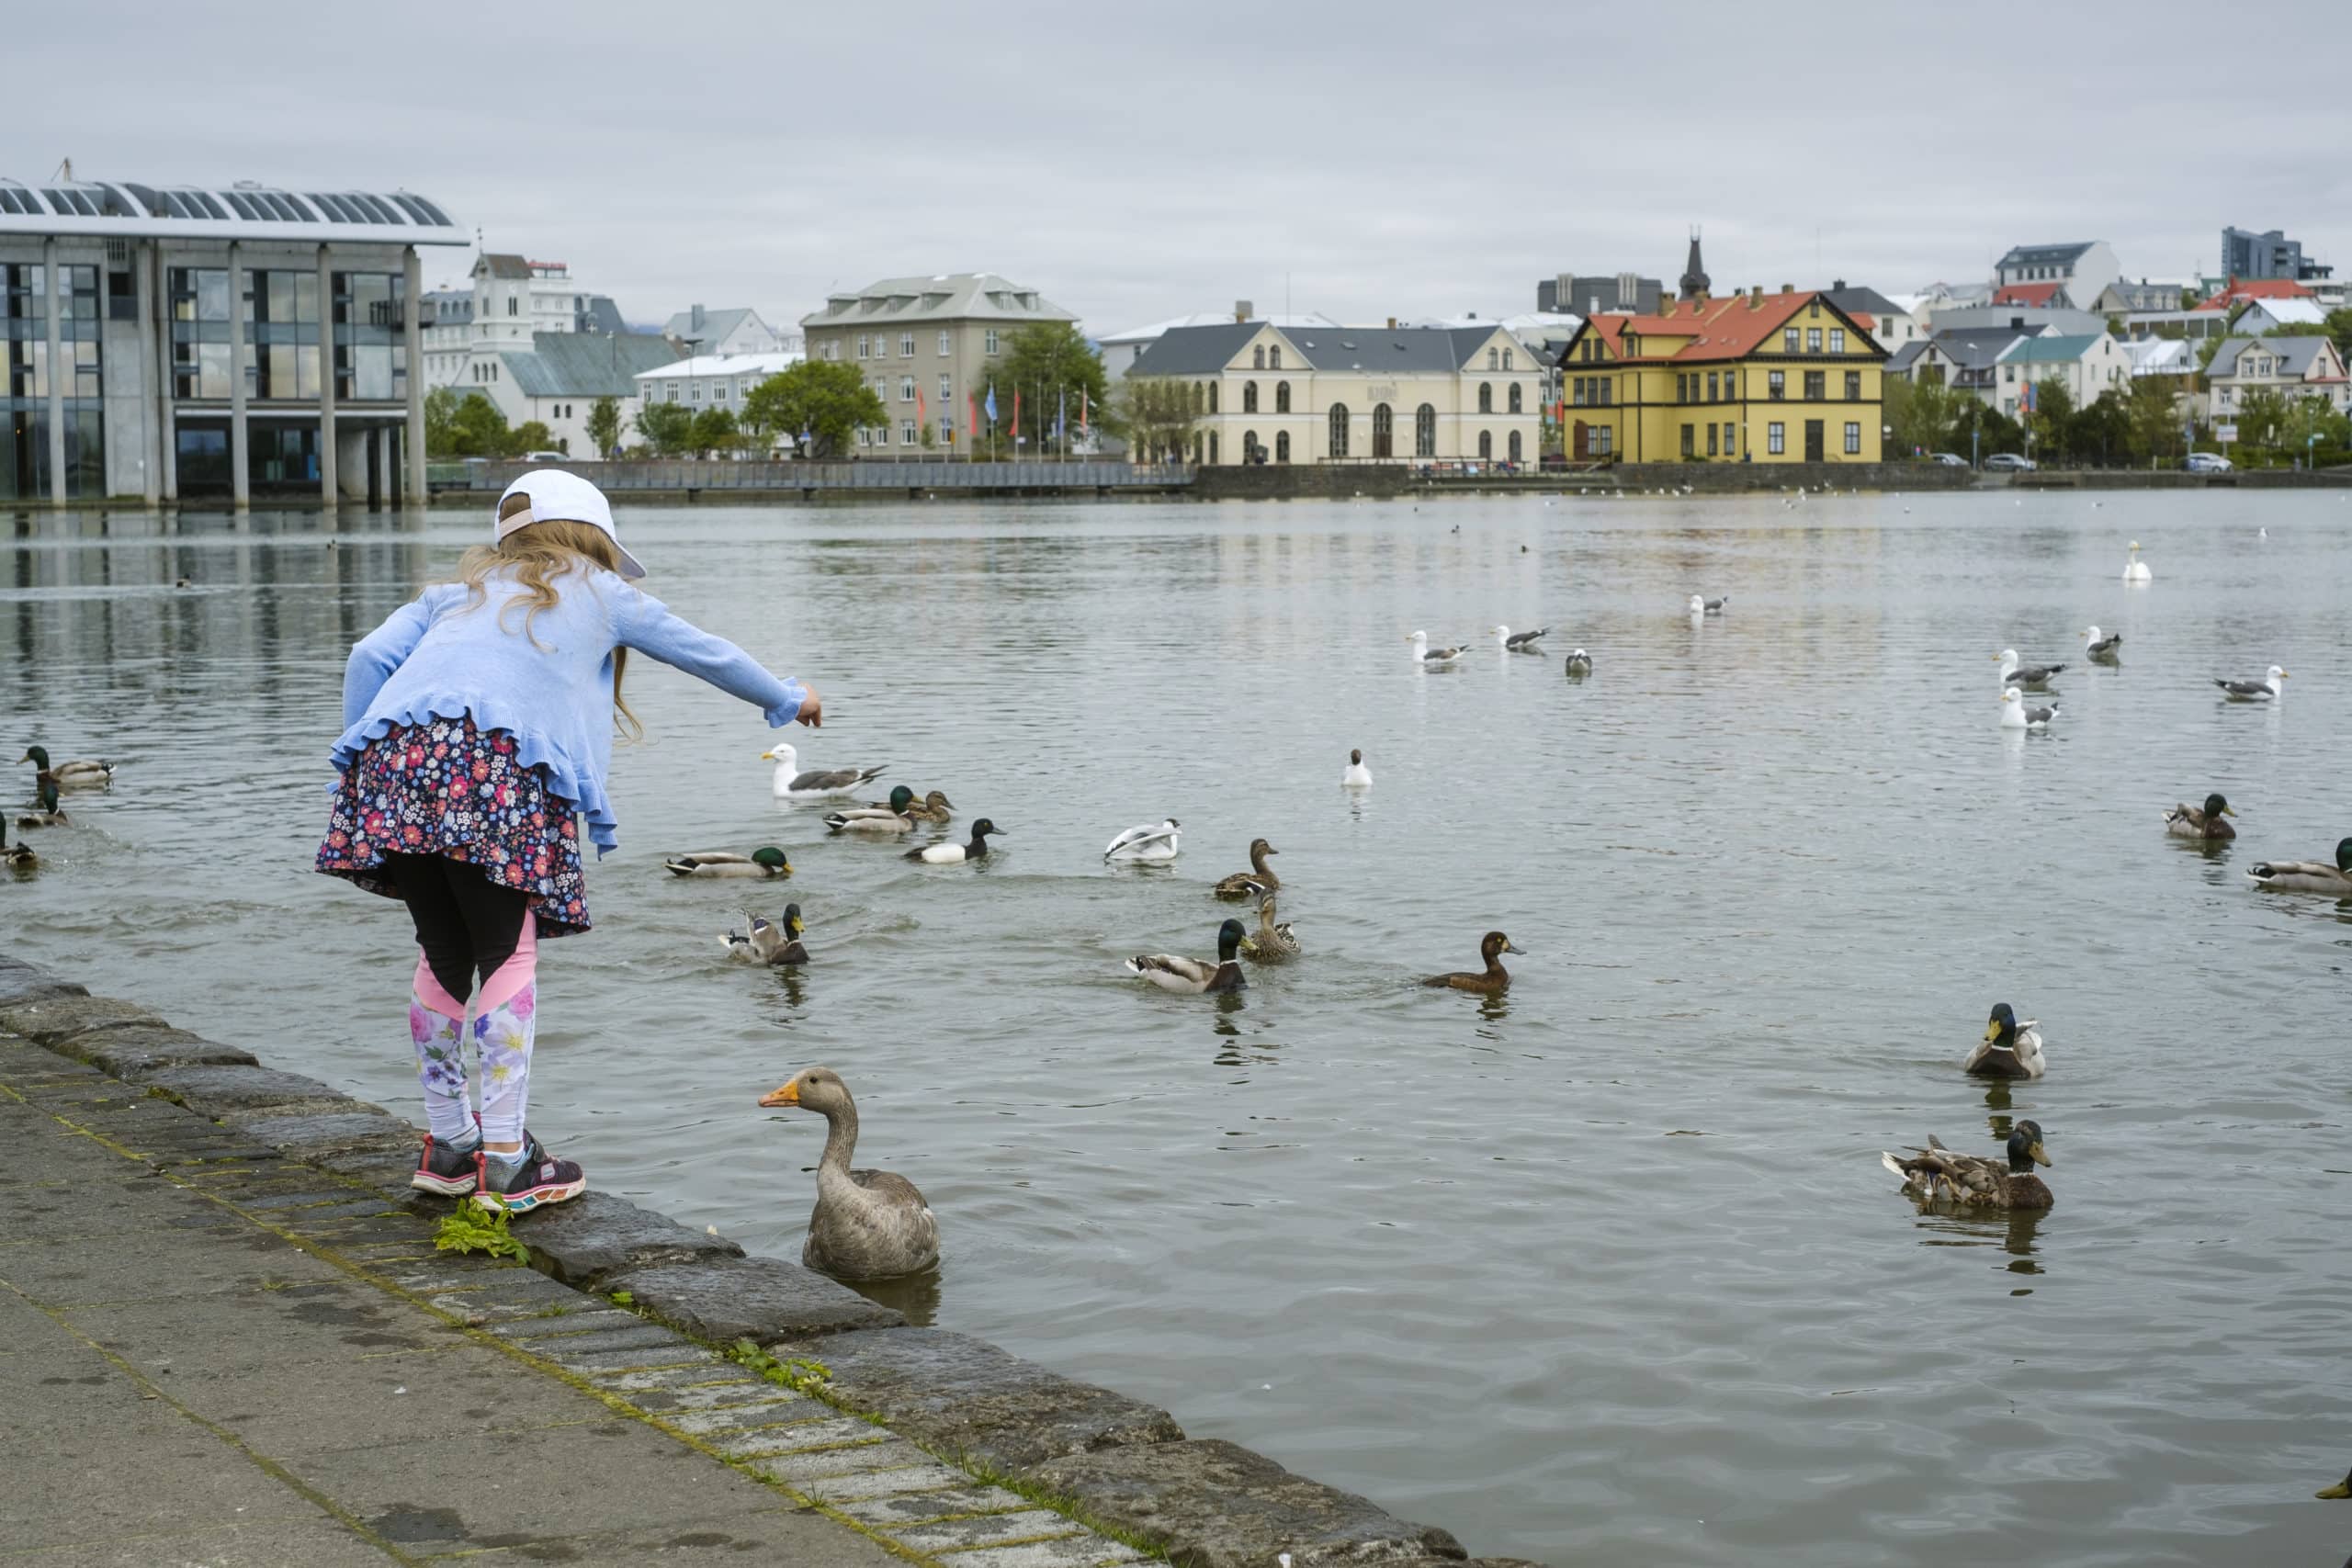 Reykjavík City Pond to Get Four More Islands